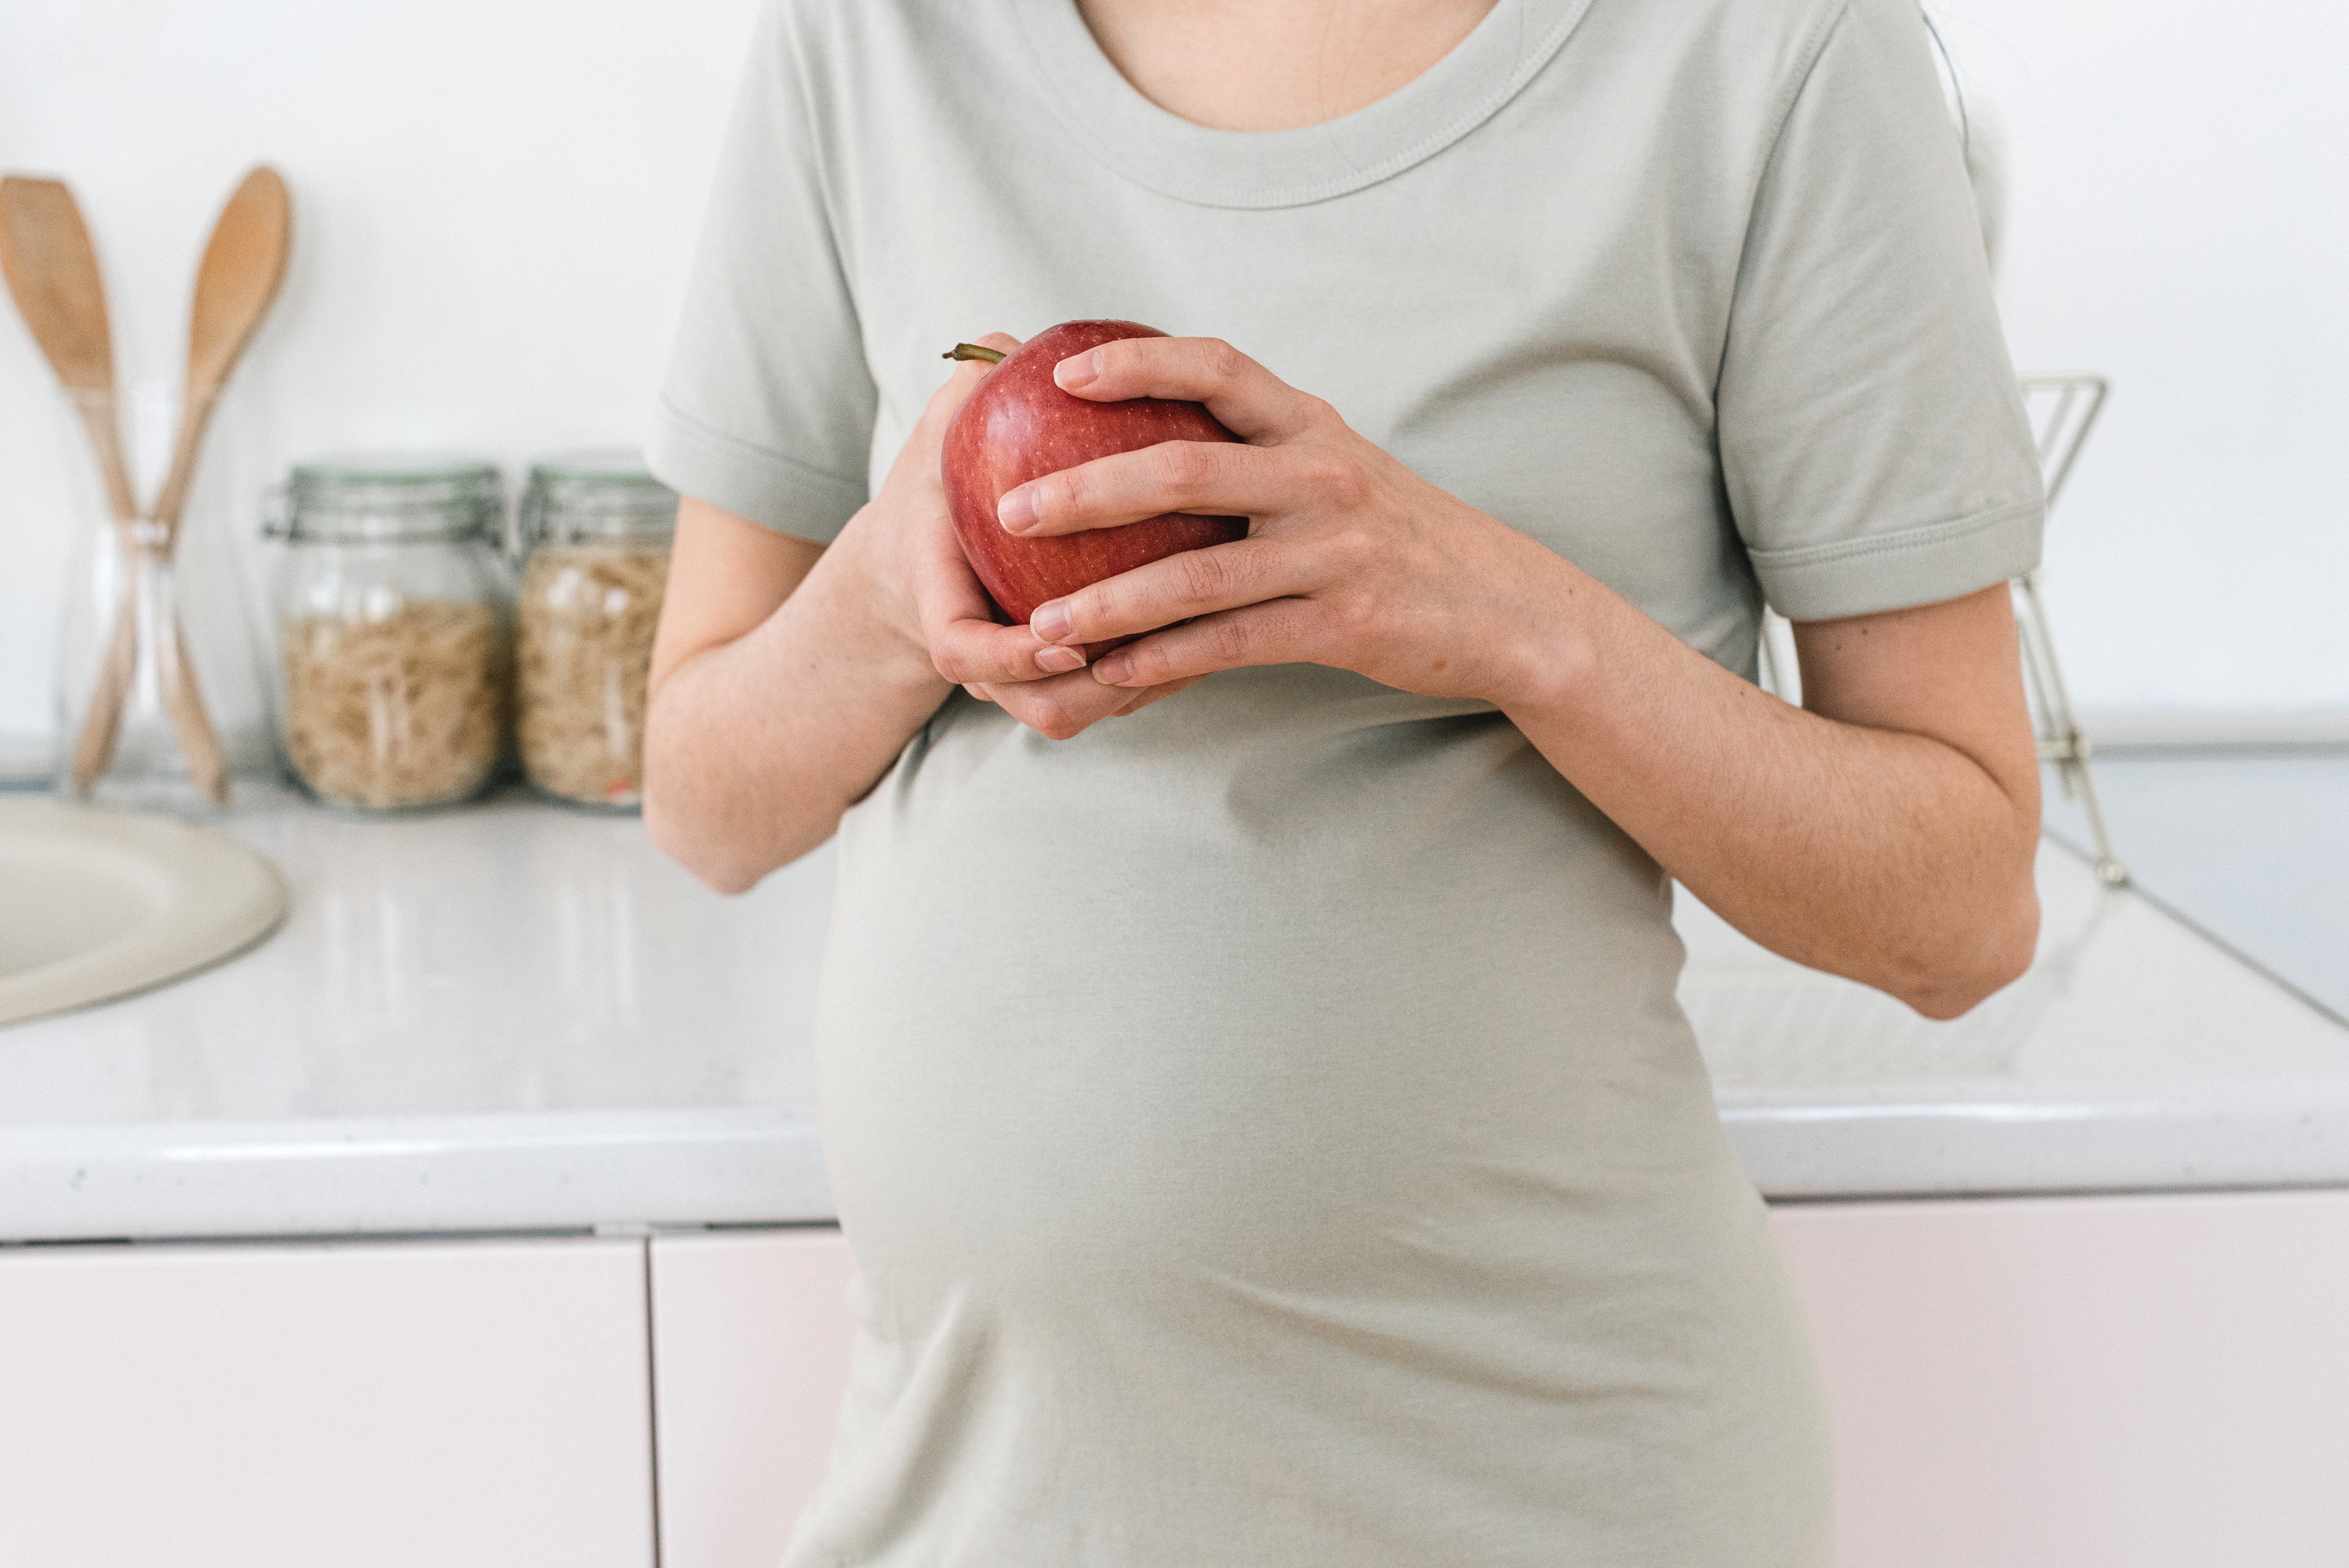 integratori e gravidanza - cosa mangiare quando si aspetta un bambino - donna incinta con una mela in mano